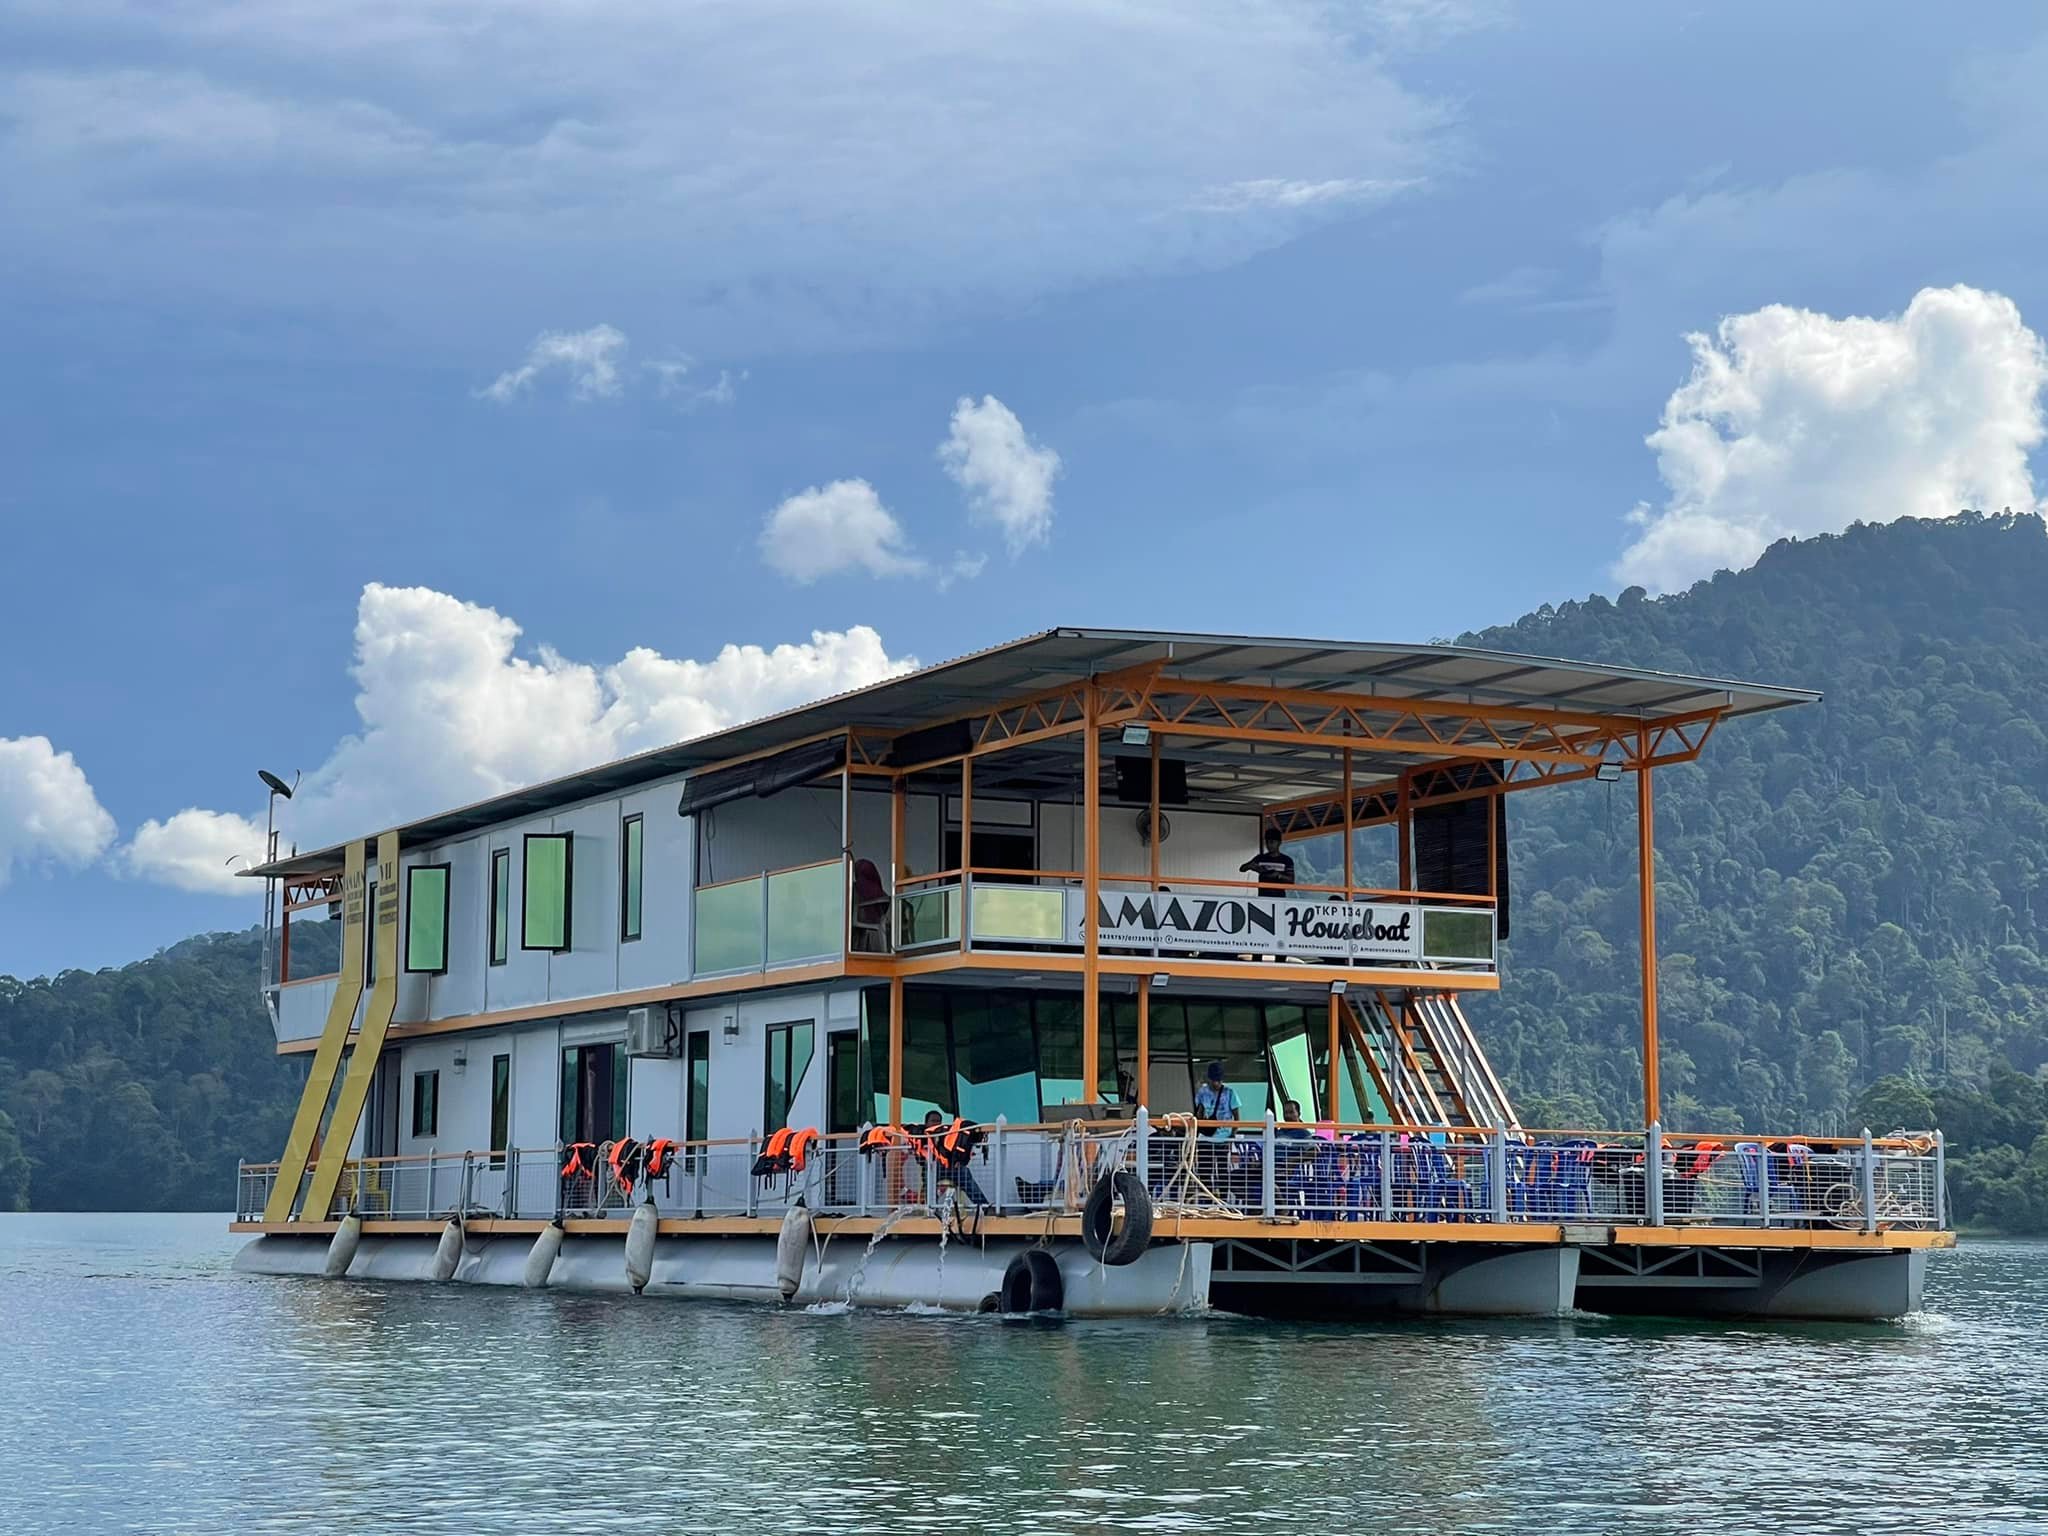 Amazon Houseboat